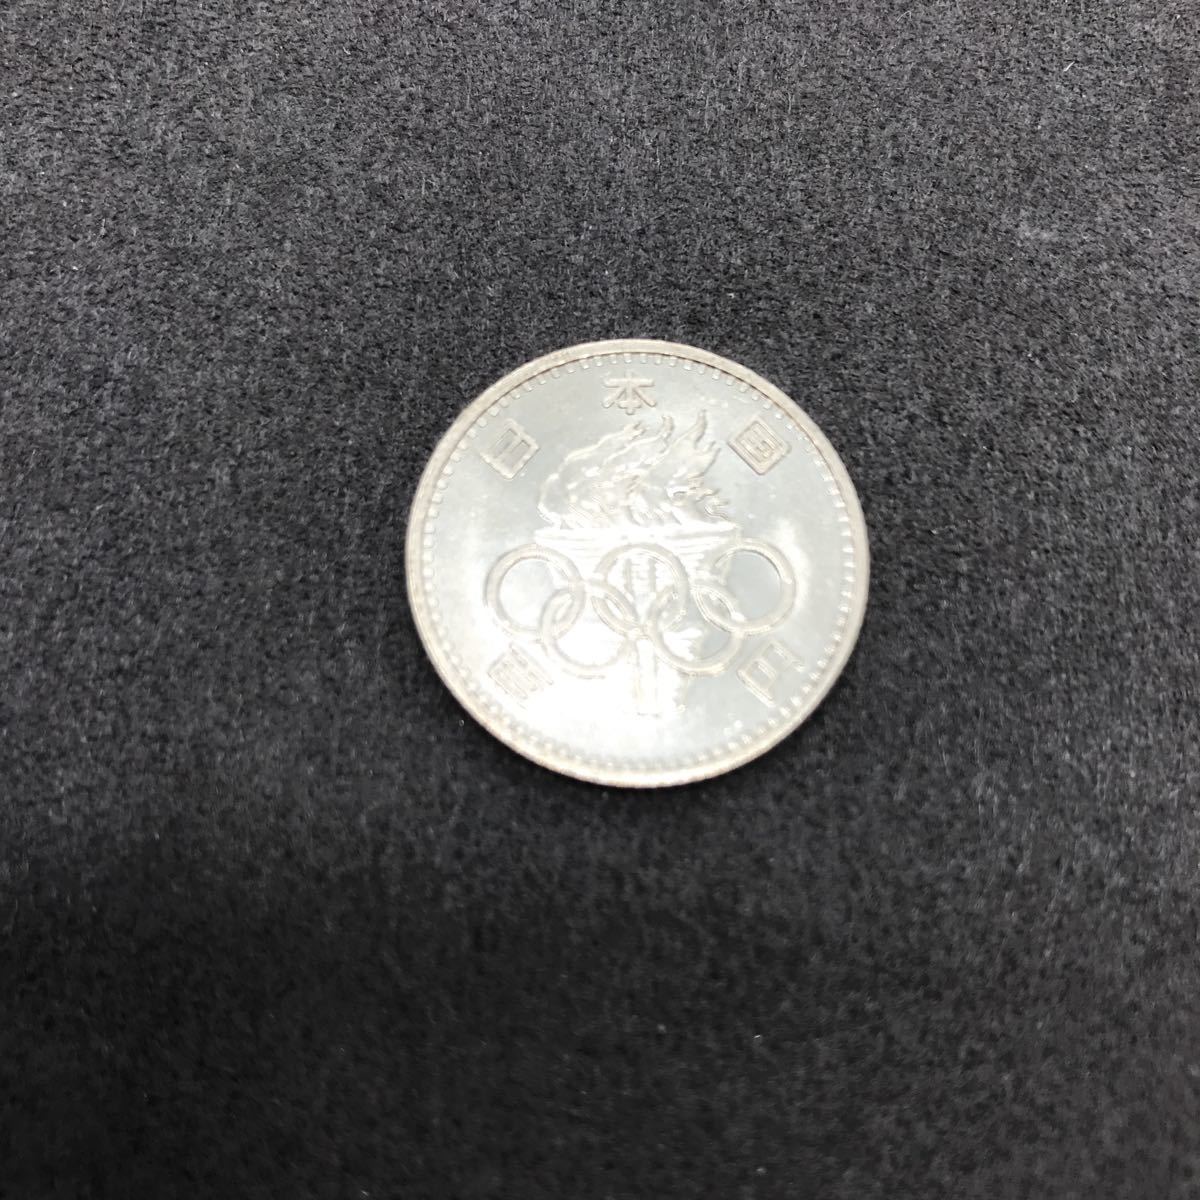 東京オリンピック1964年1000円銀貨/100円銀貨2枚セット記念硬貨東京